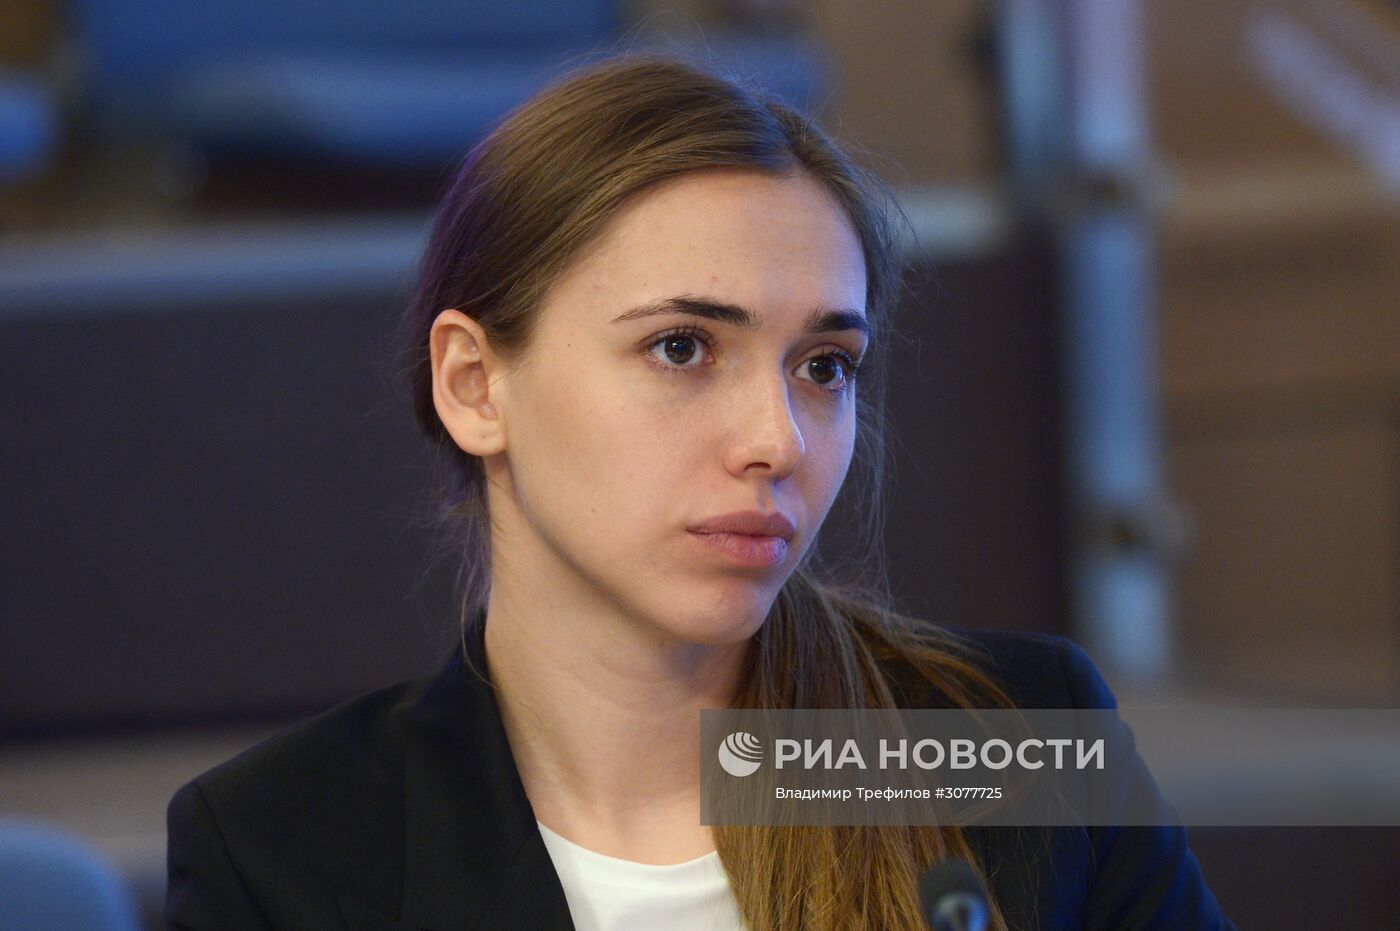 Пресс-конференция, посвященная XXV Всероссийскому фестивалю "Российская студенческая весна"